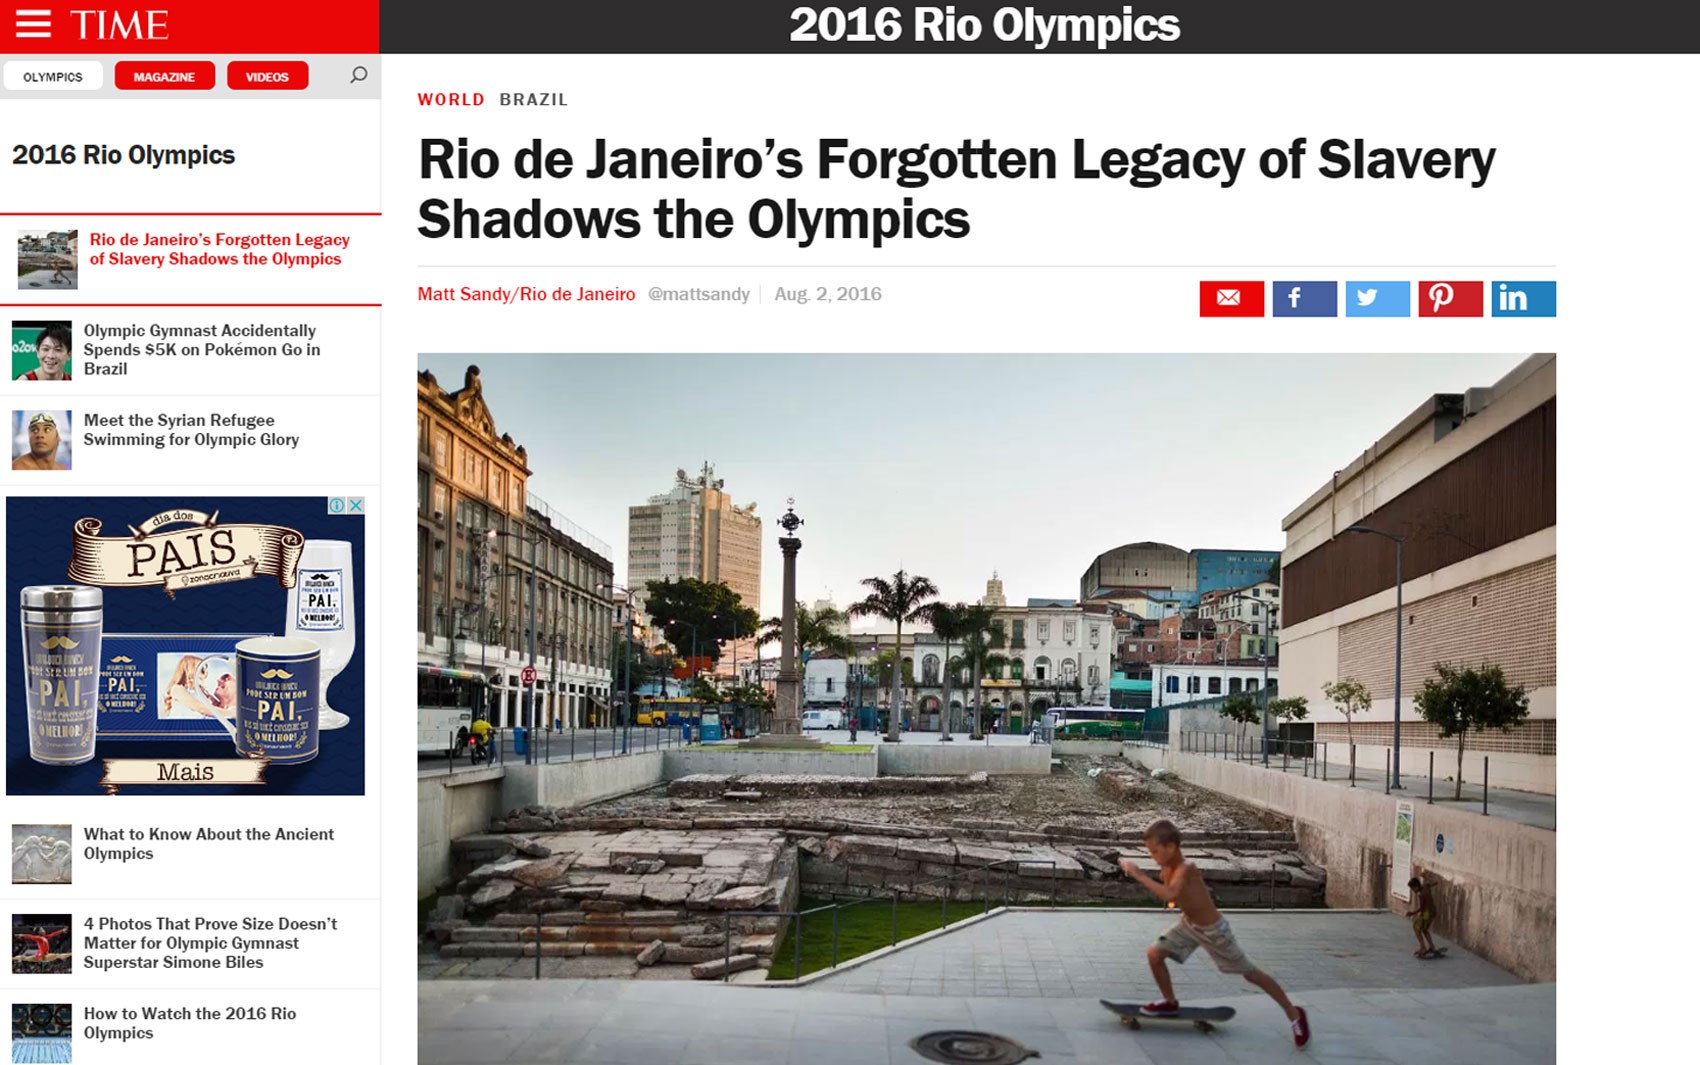 Artigo da revista 'Time' fala sobre o legado esquecido da escravidão no Rio de Janeiro